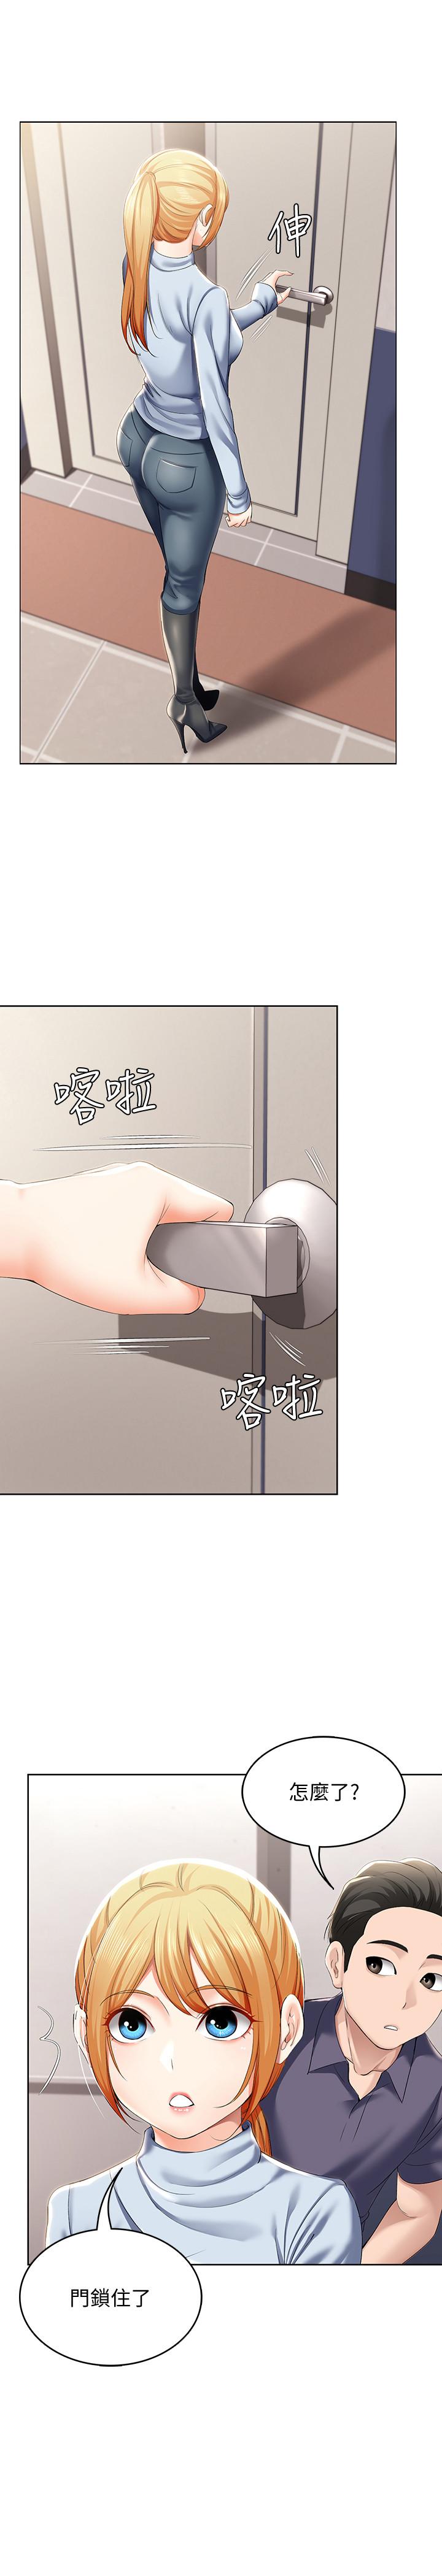 韩国污漫画 寄宿日記 第31话-刺激万分的大胆要求 30